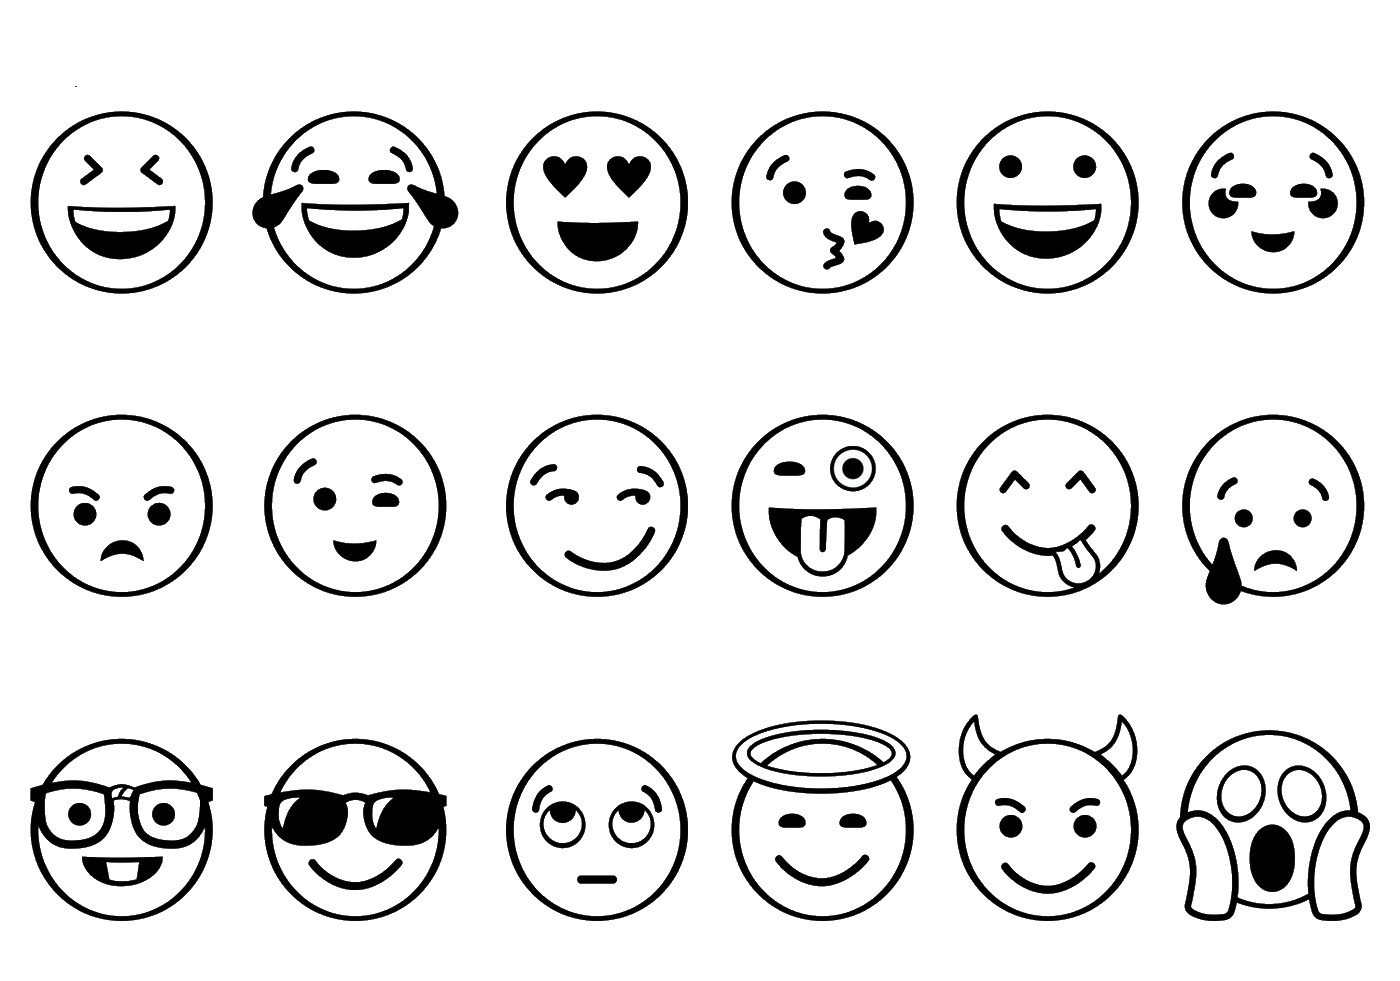 Como desenhar imagens de emojis